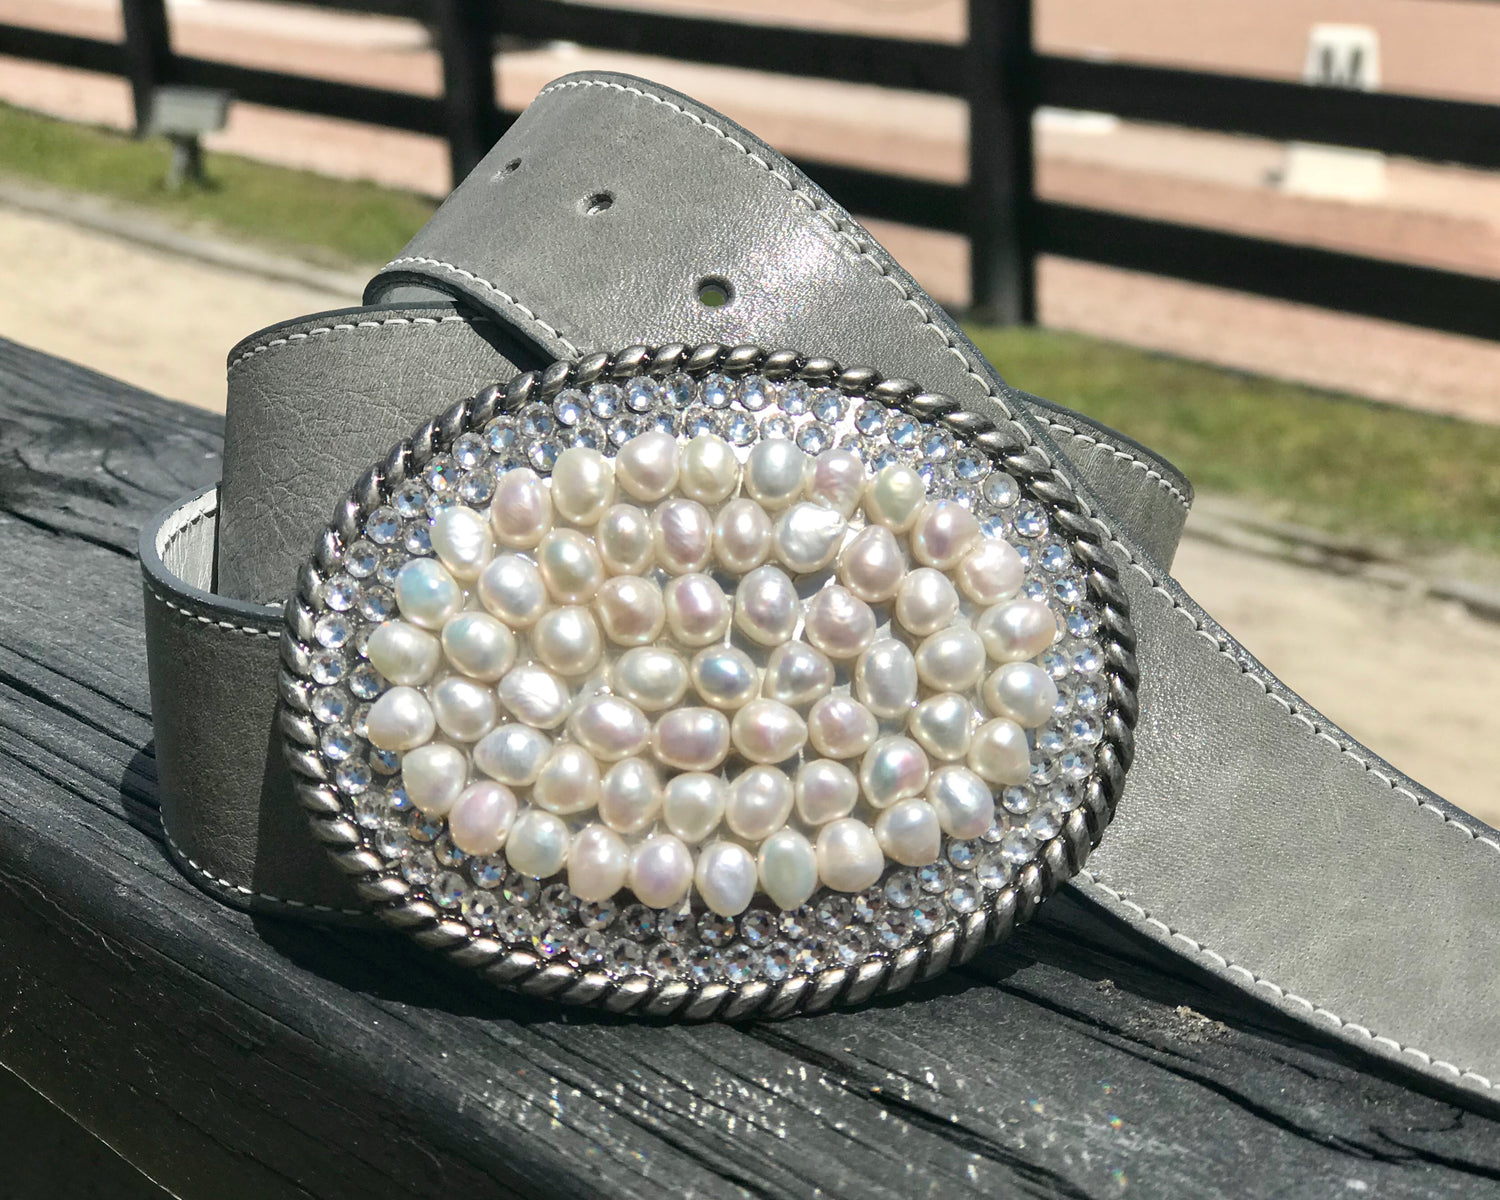 Pretty in Pearls